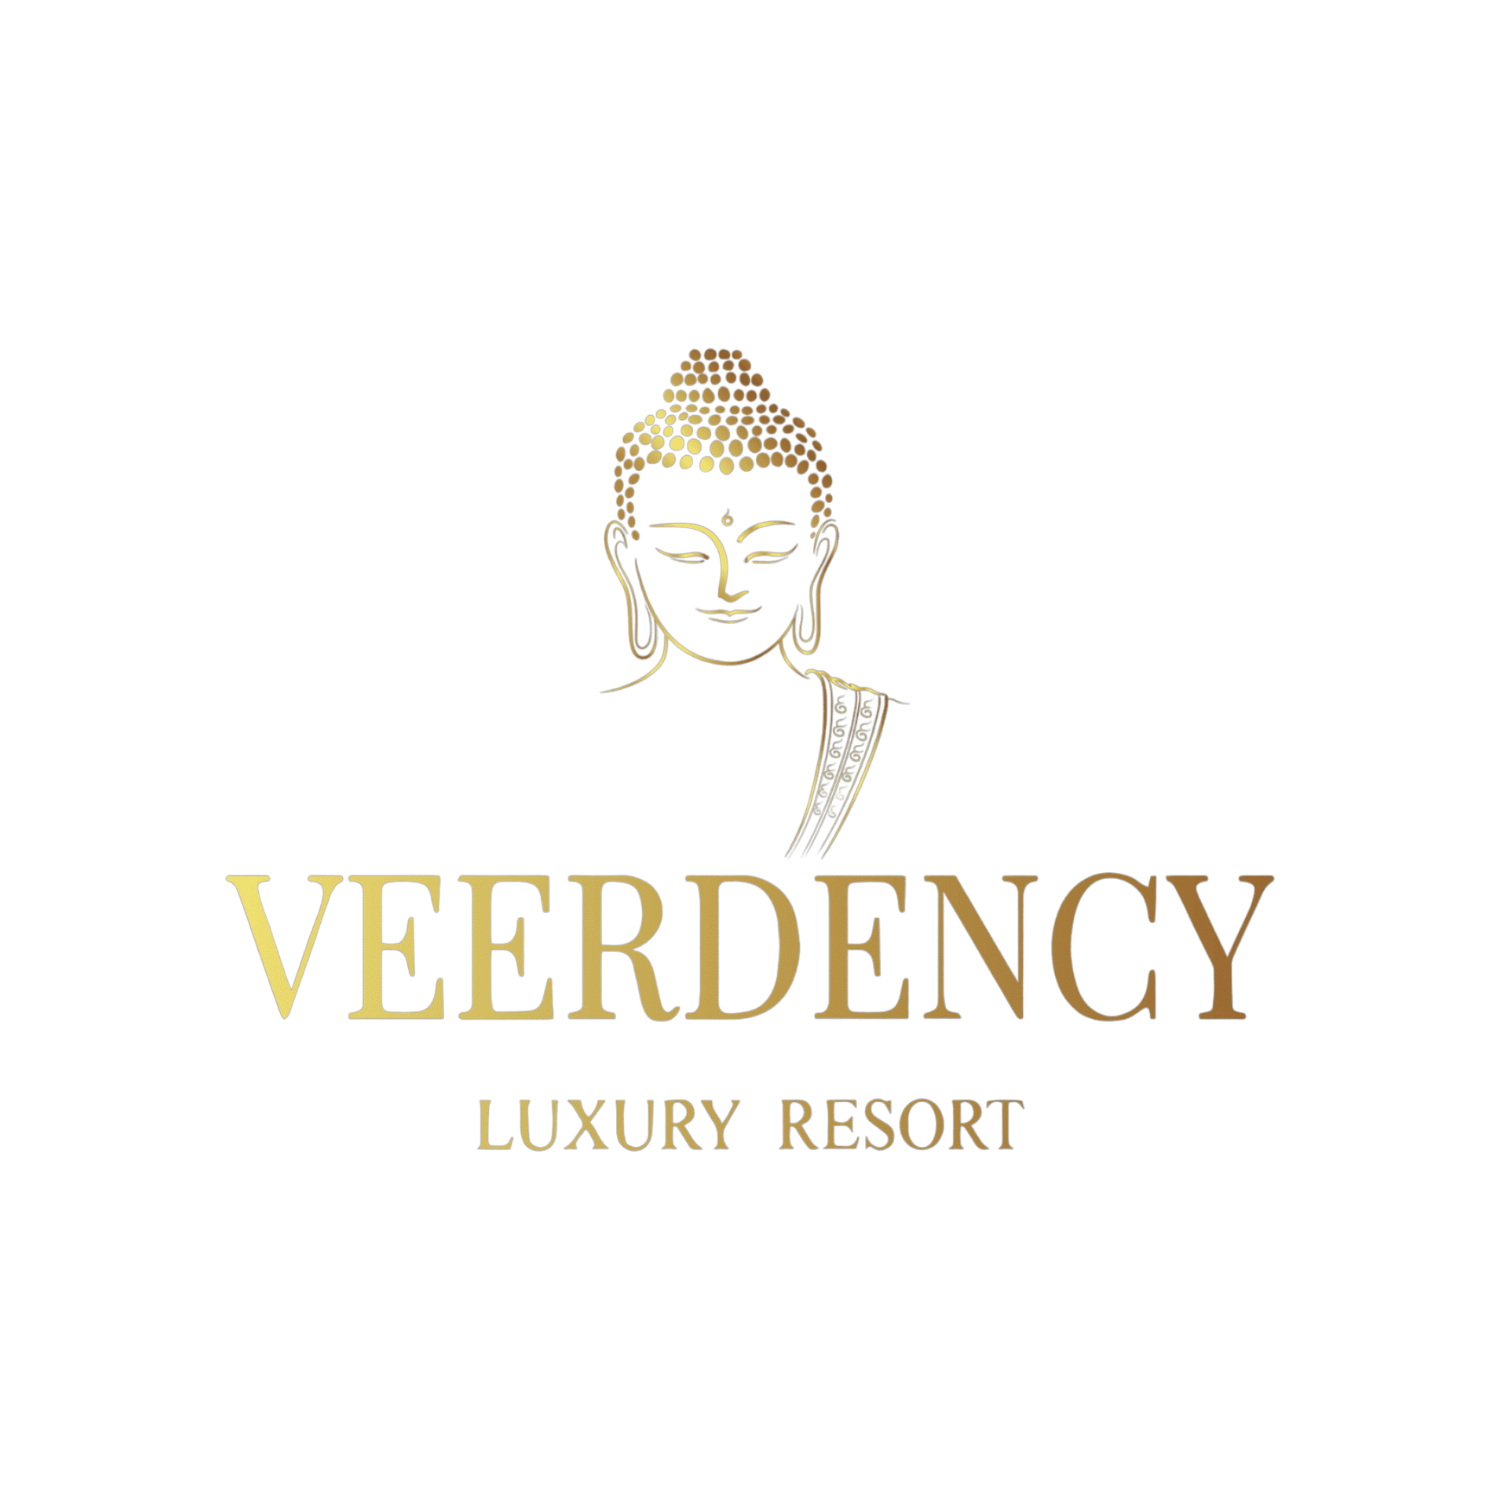 Veerdency Luxury Resort